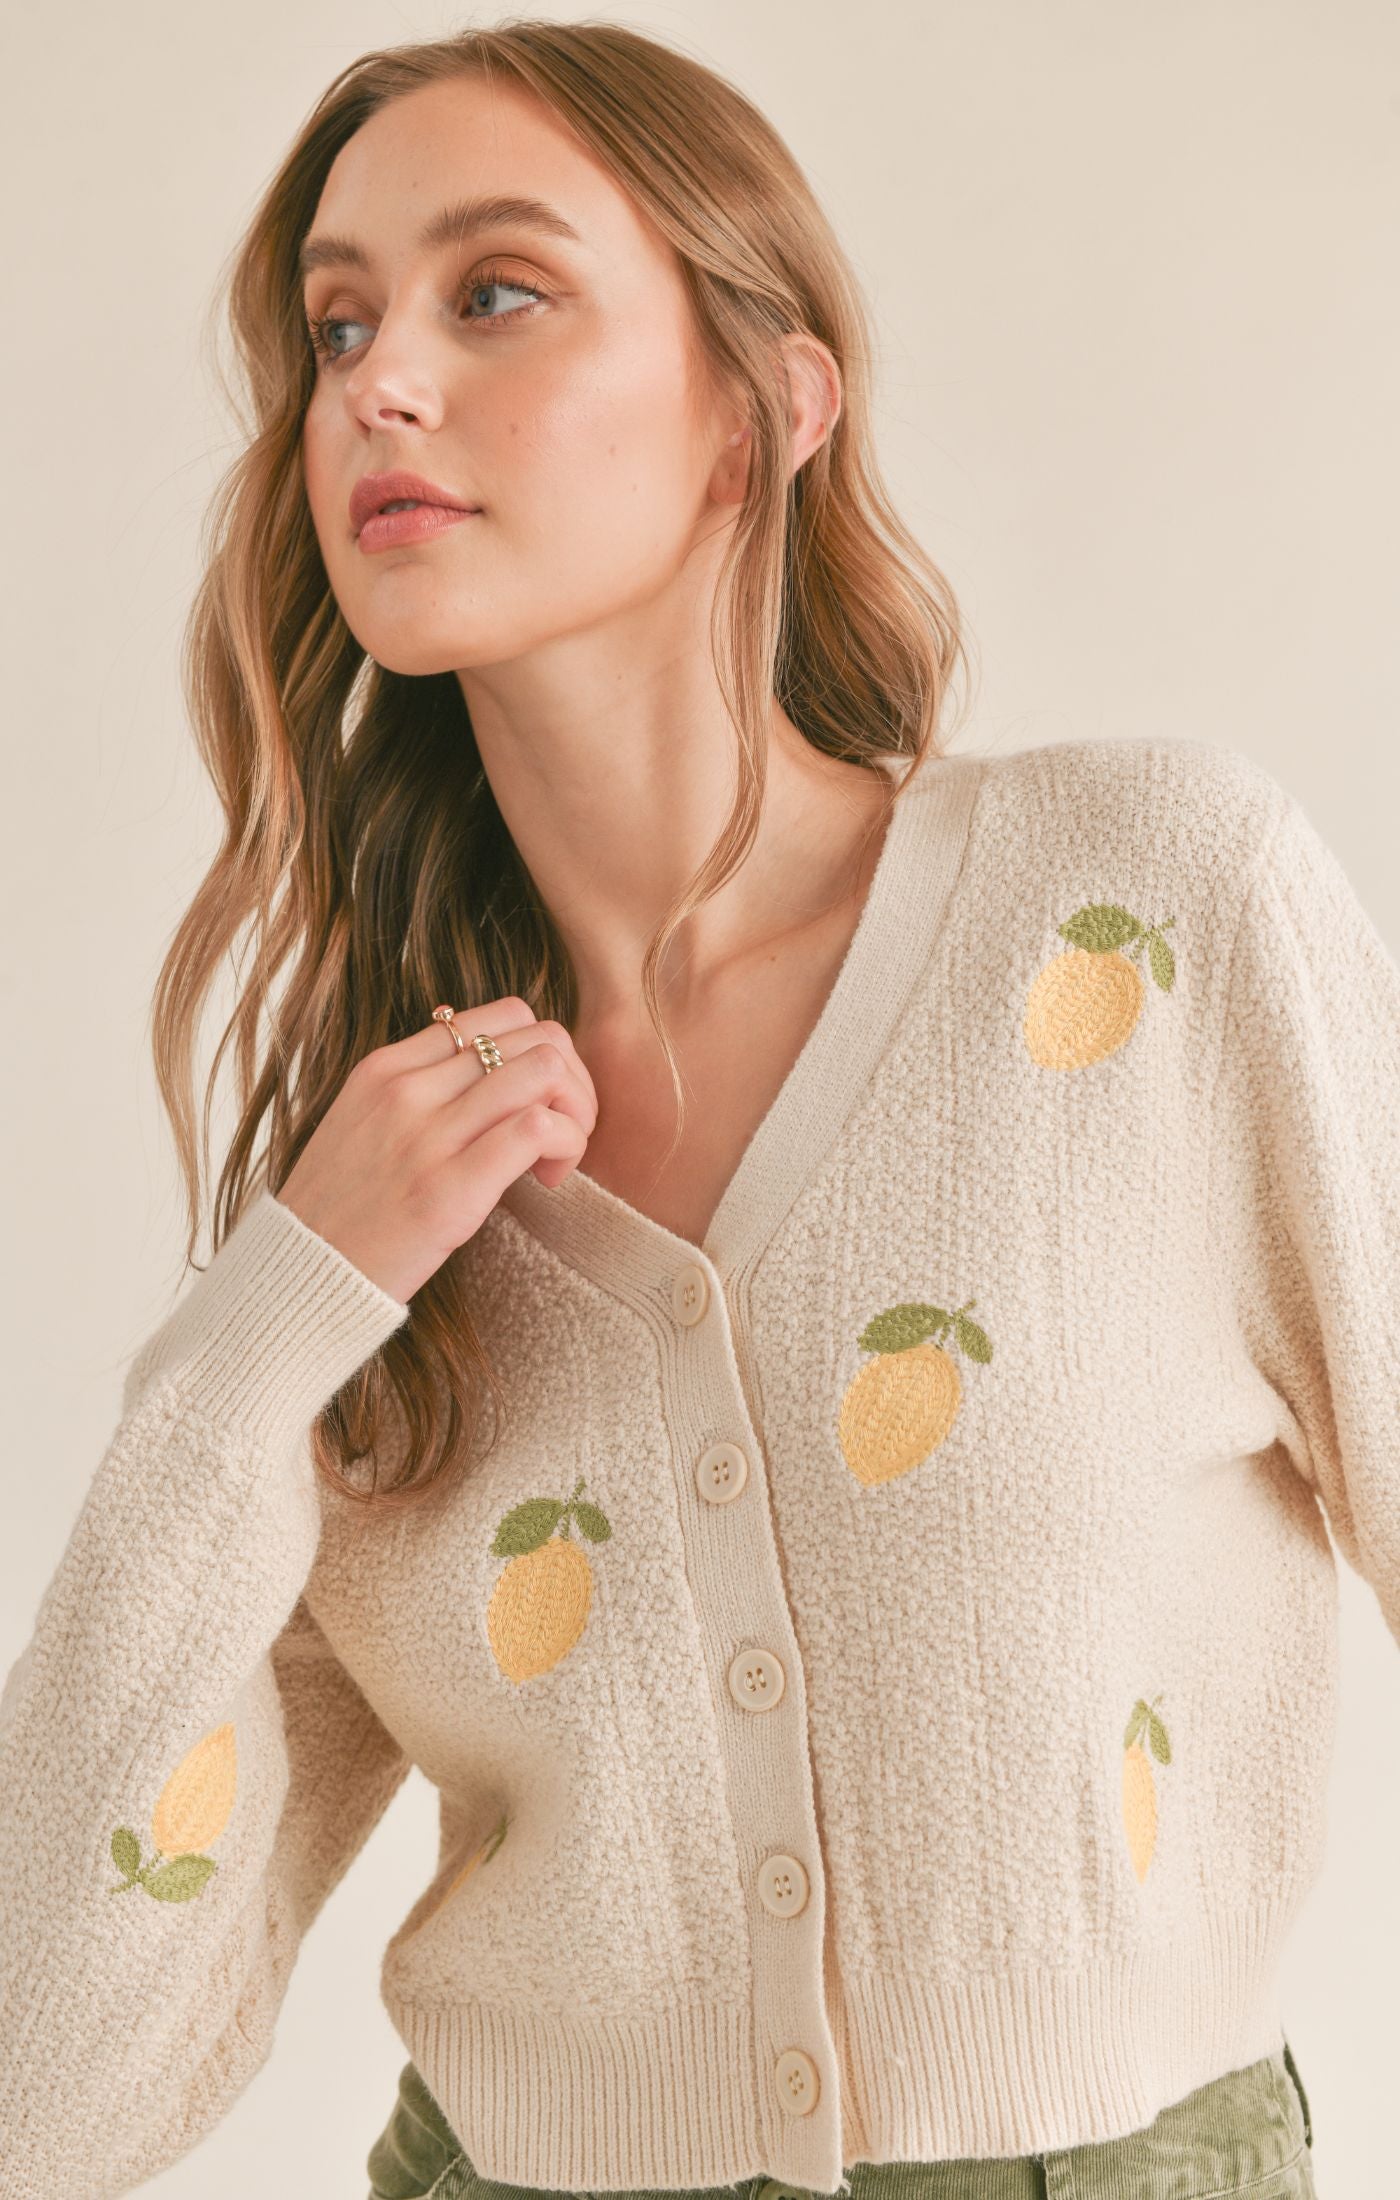 Sweater - SADIE & SAGE - Esme Embroidered Lemon Cardi - PLENTY